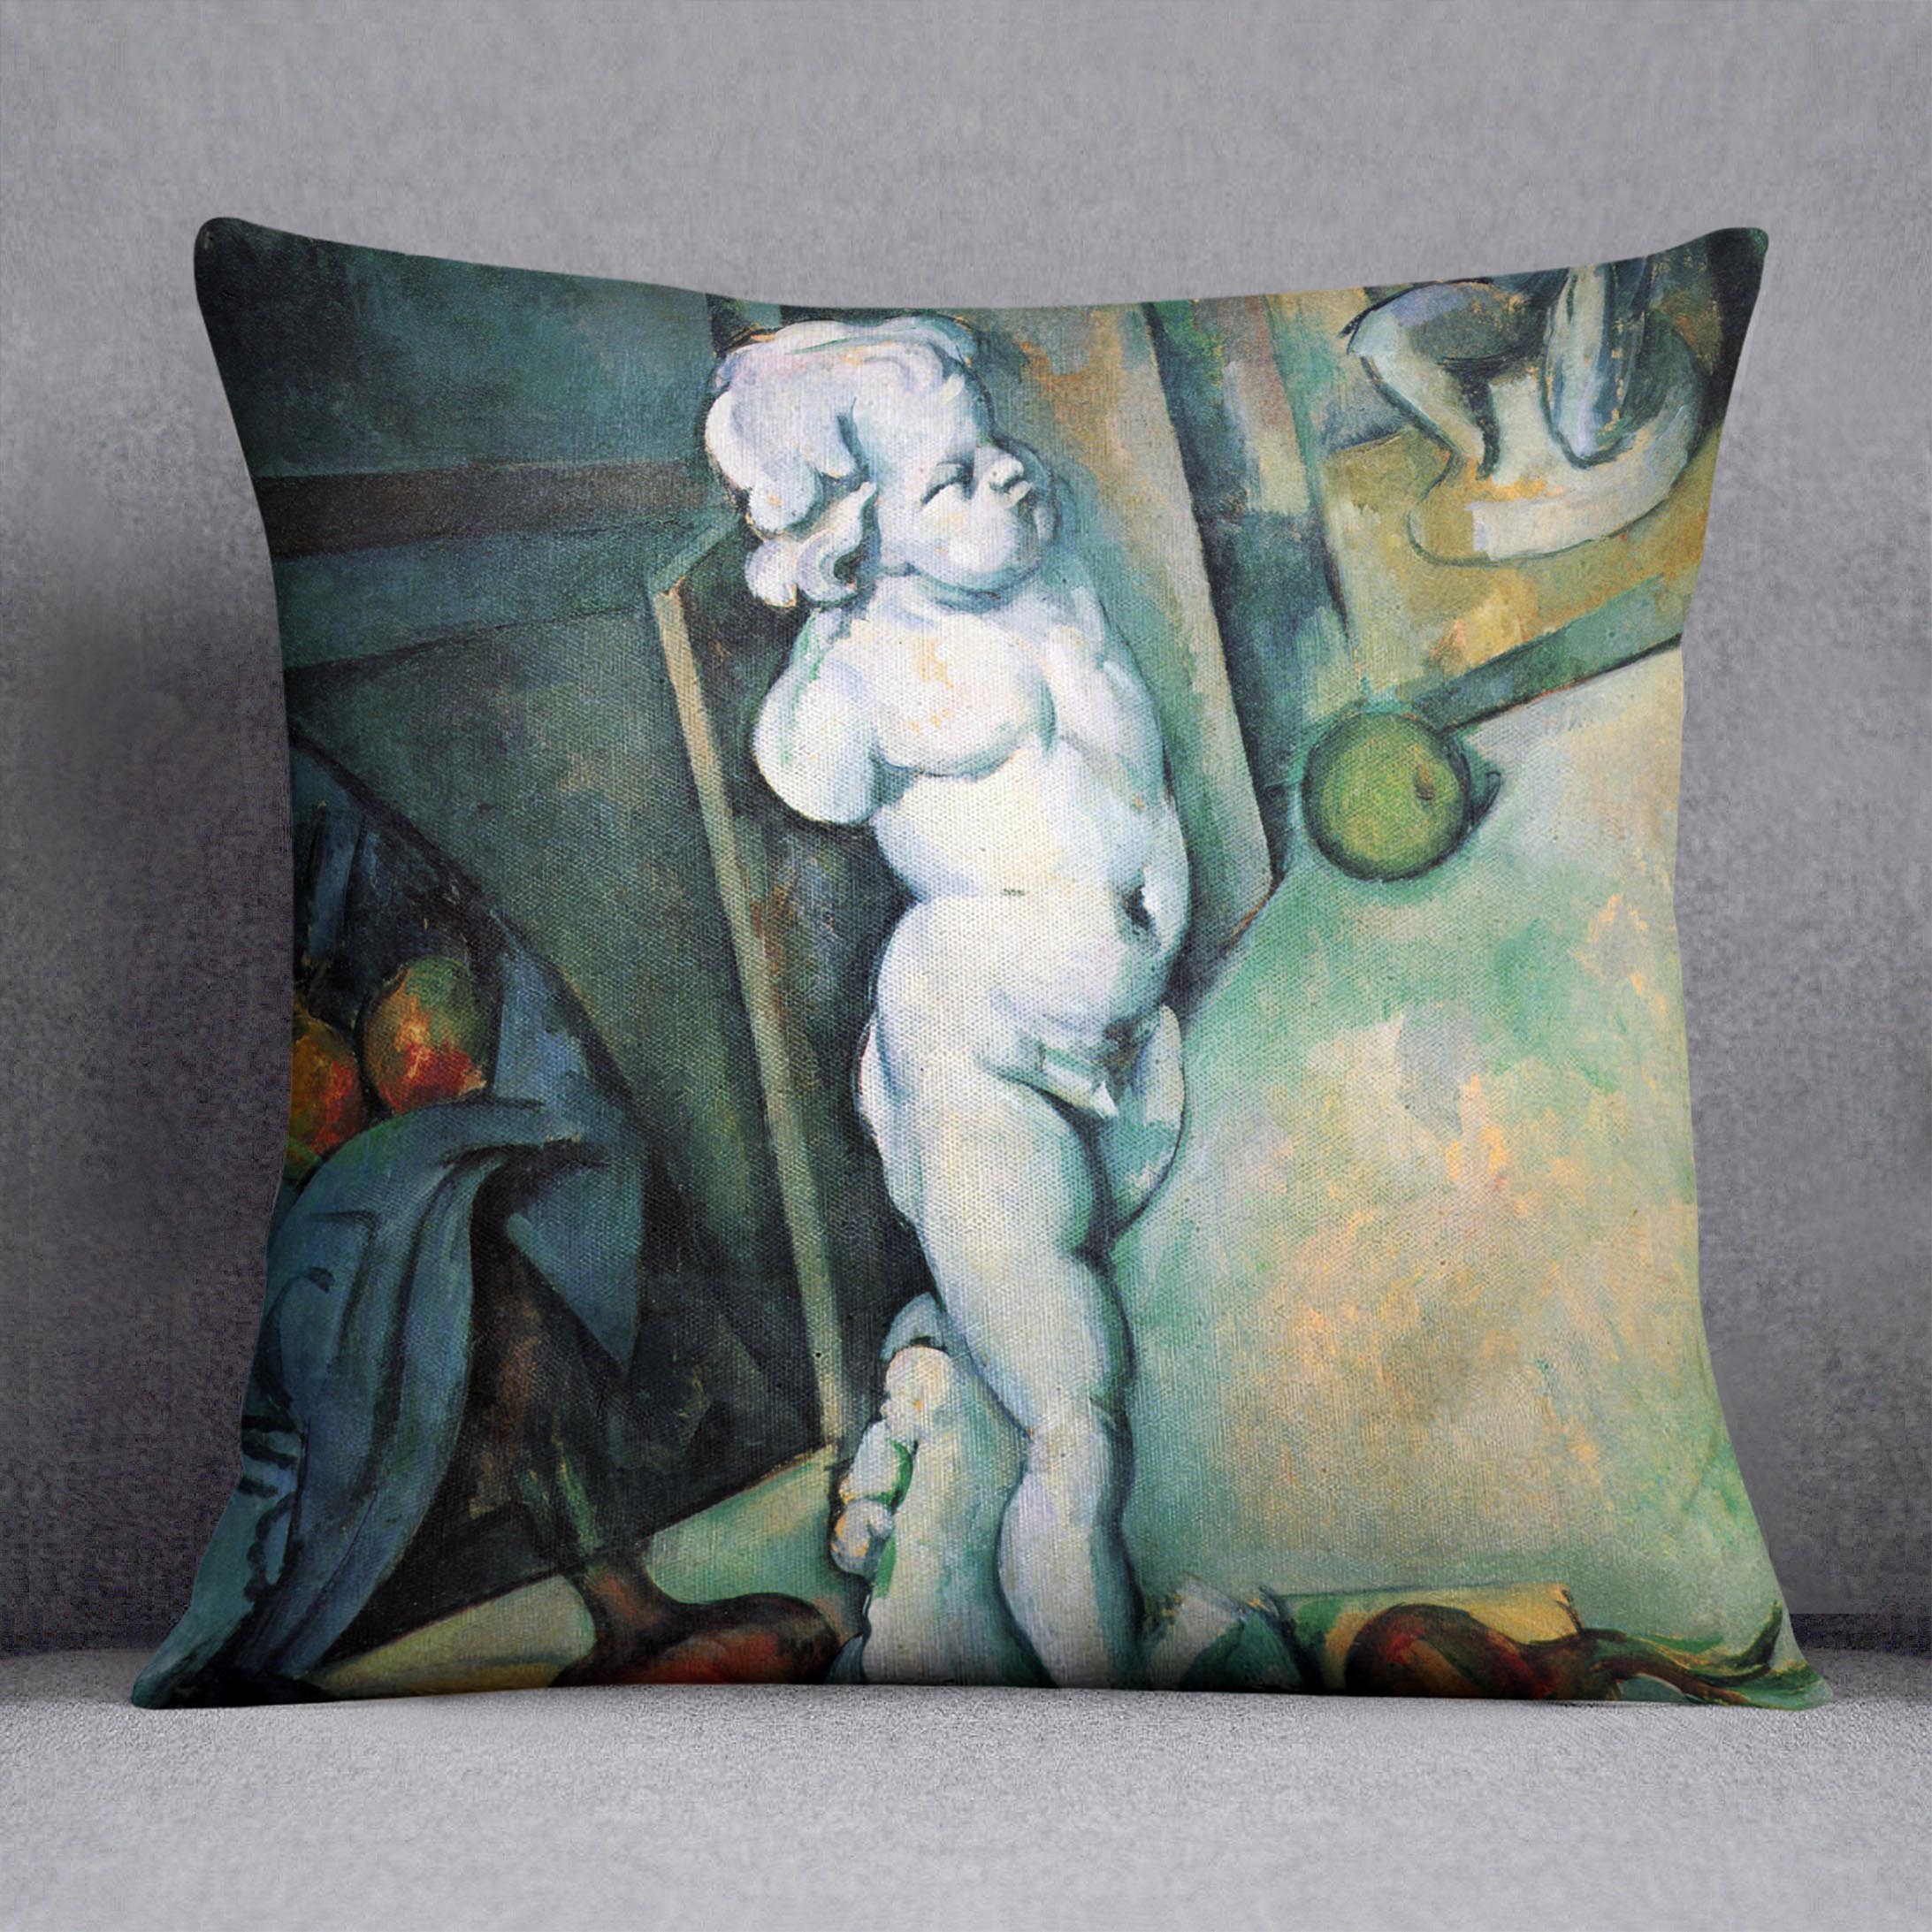 Still Life with Cherub by Cezanne Cushion - Canvas Art Rocks - 1